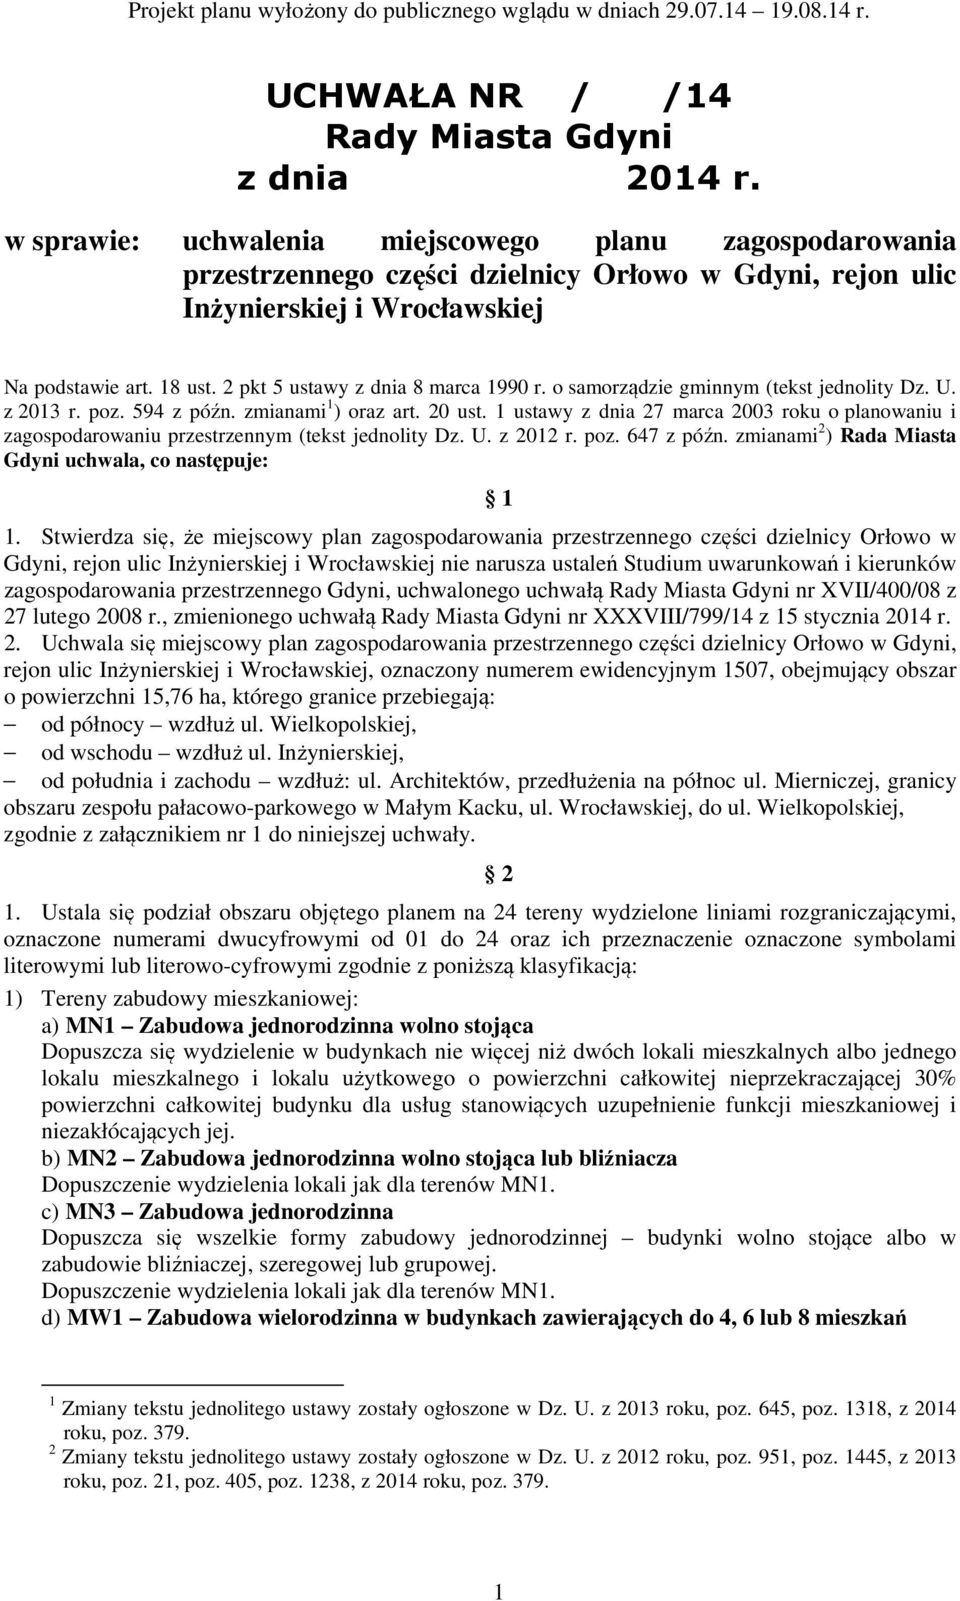 2 pkt 5 ustawy z dnia 8 marca 1990 r. o samorządzie gminnym (tekst jednolity Dz. U. z 2013 r. poz. 594 z późn. zmianami 1 ) oraz art. 20 ust.